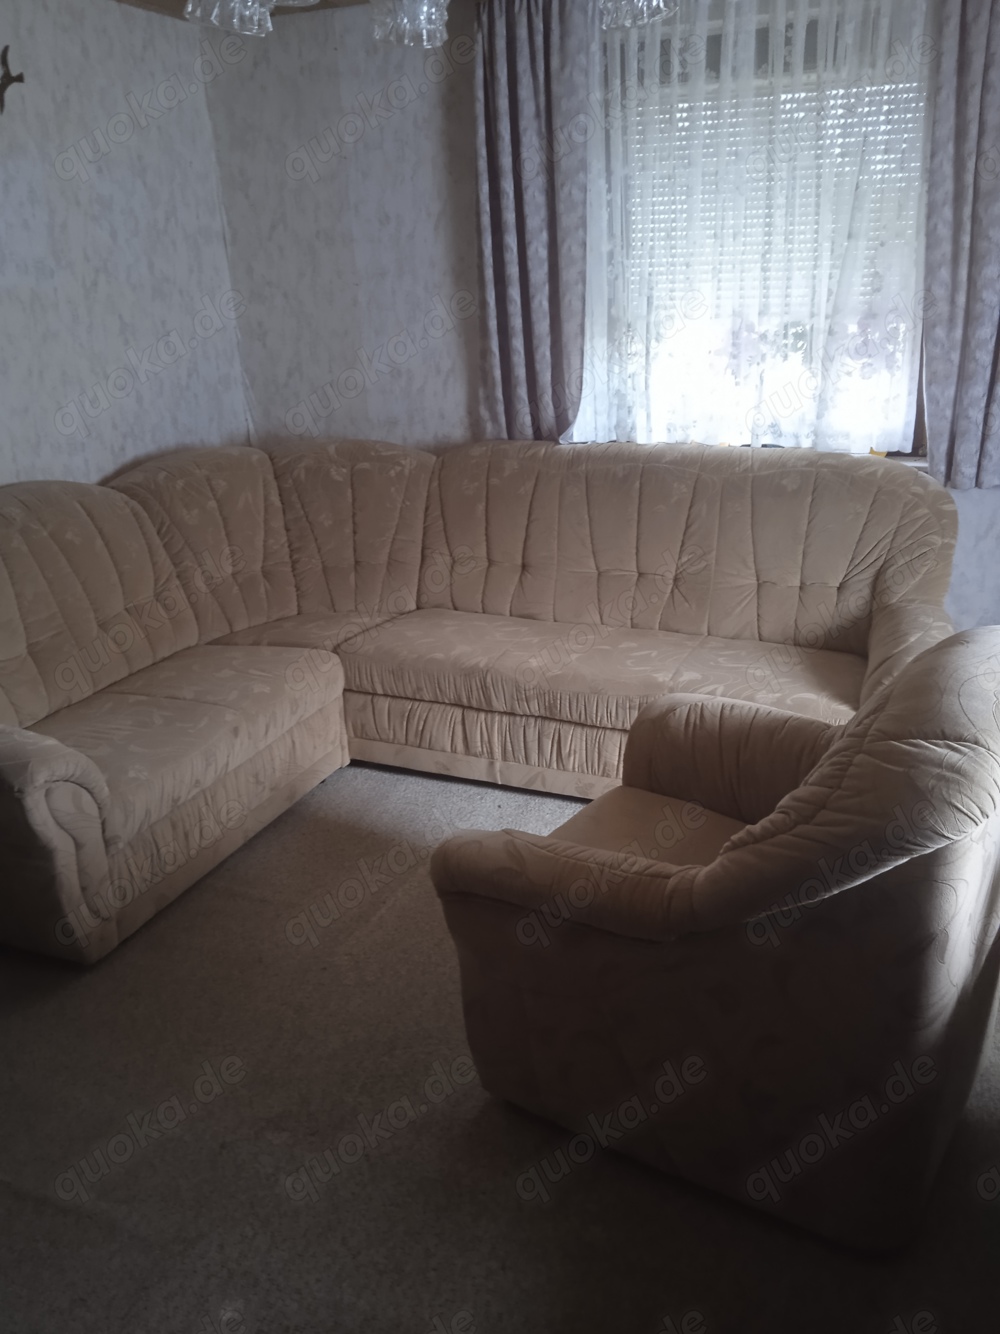 Couchgarnitur mit Sessel neuwertig